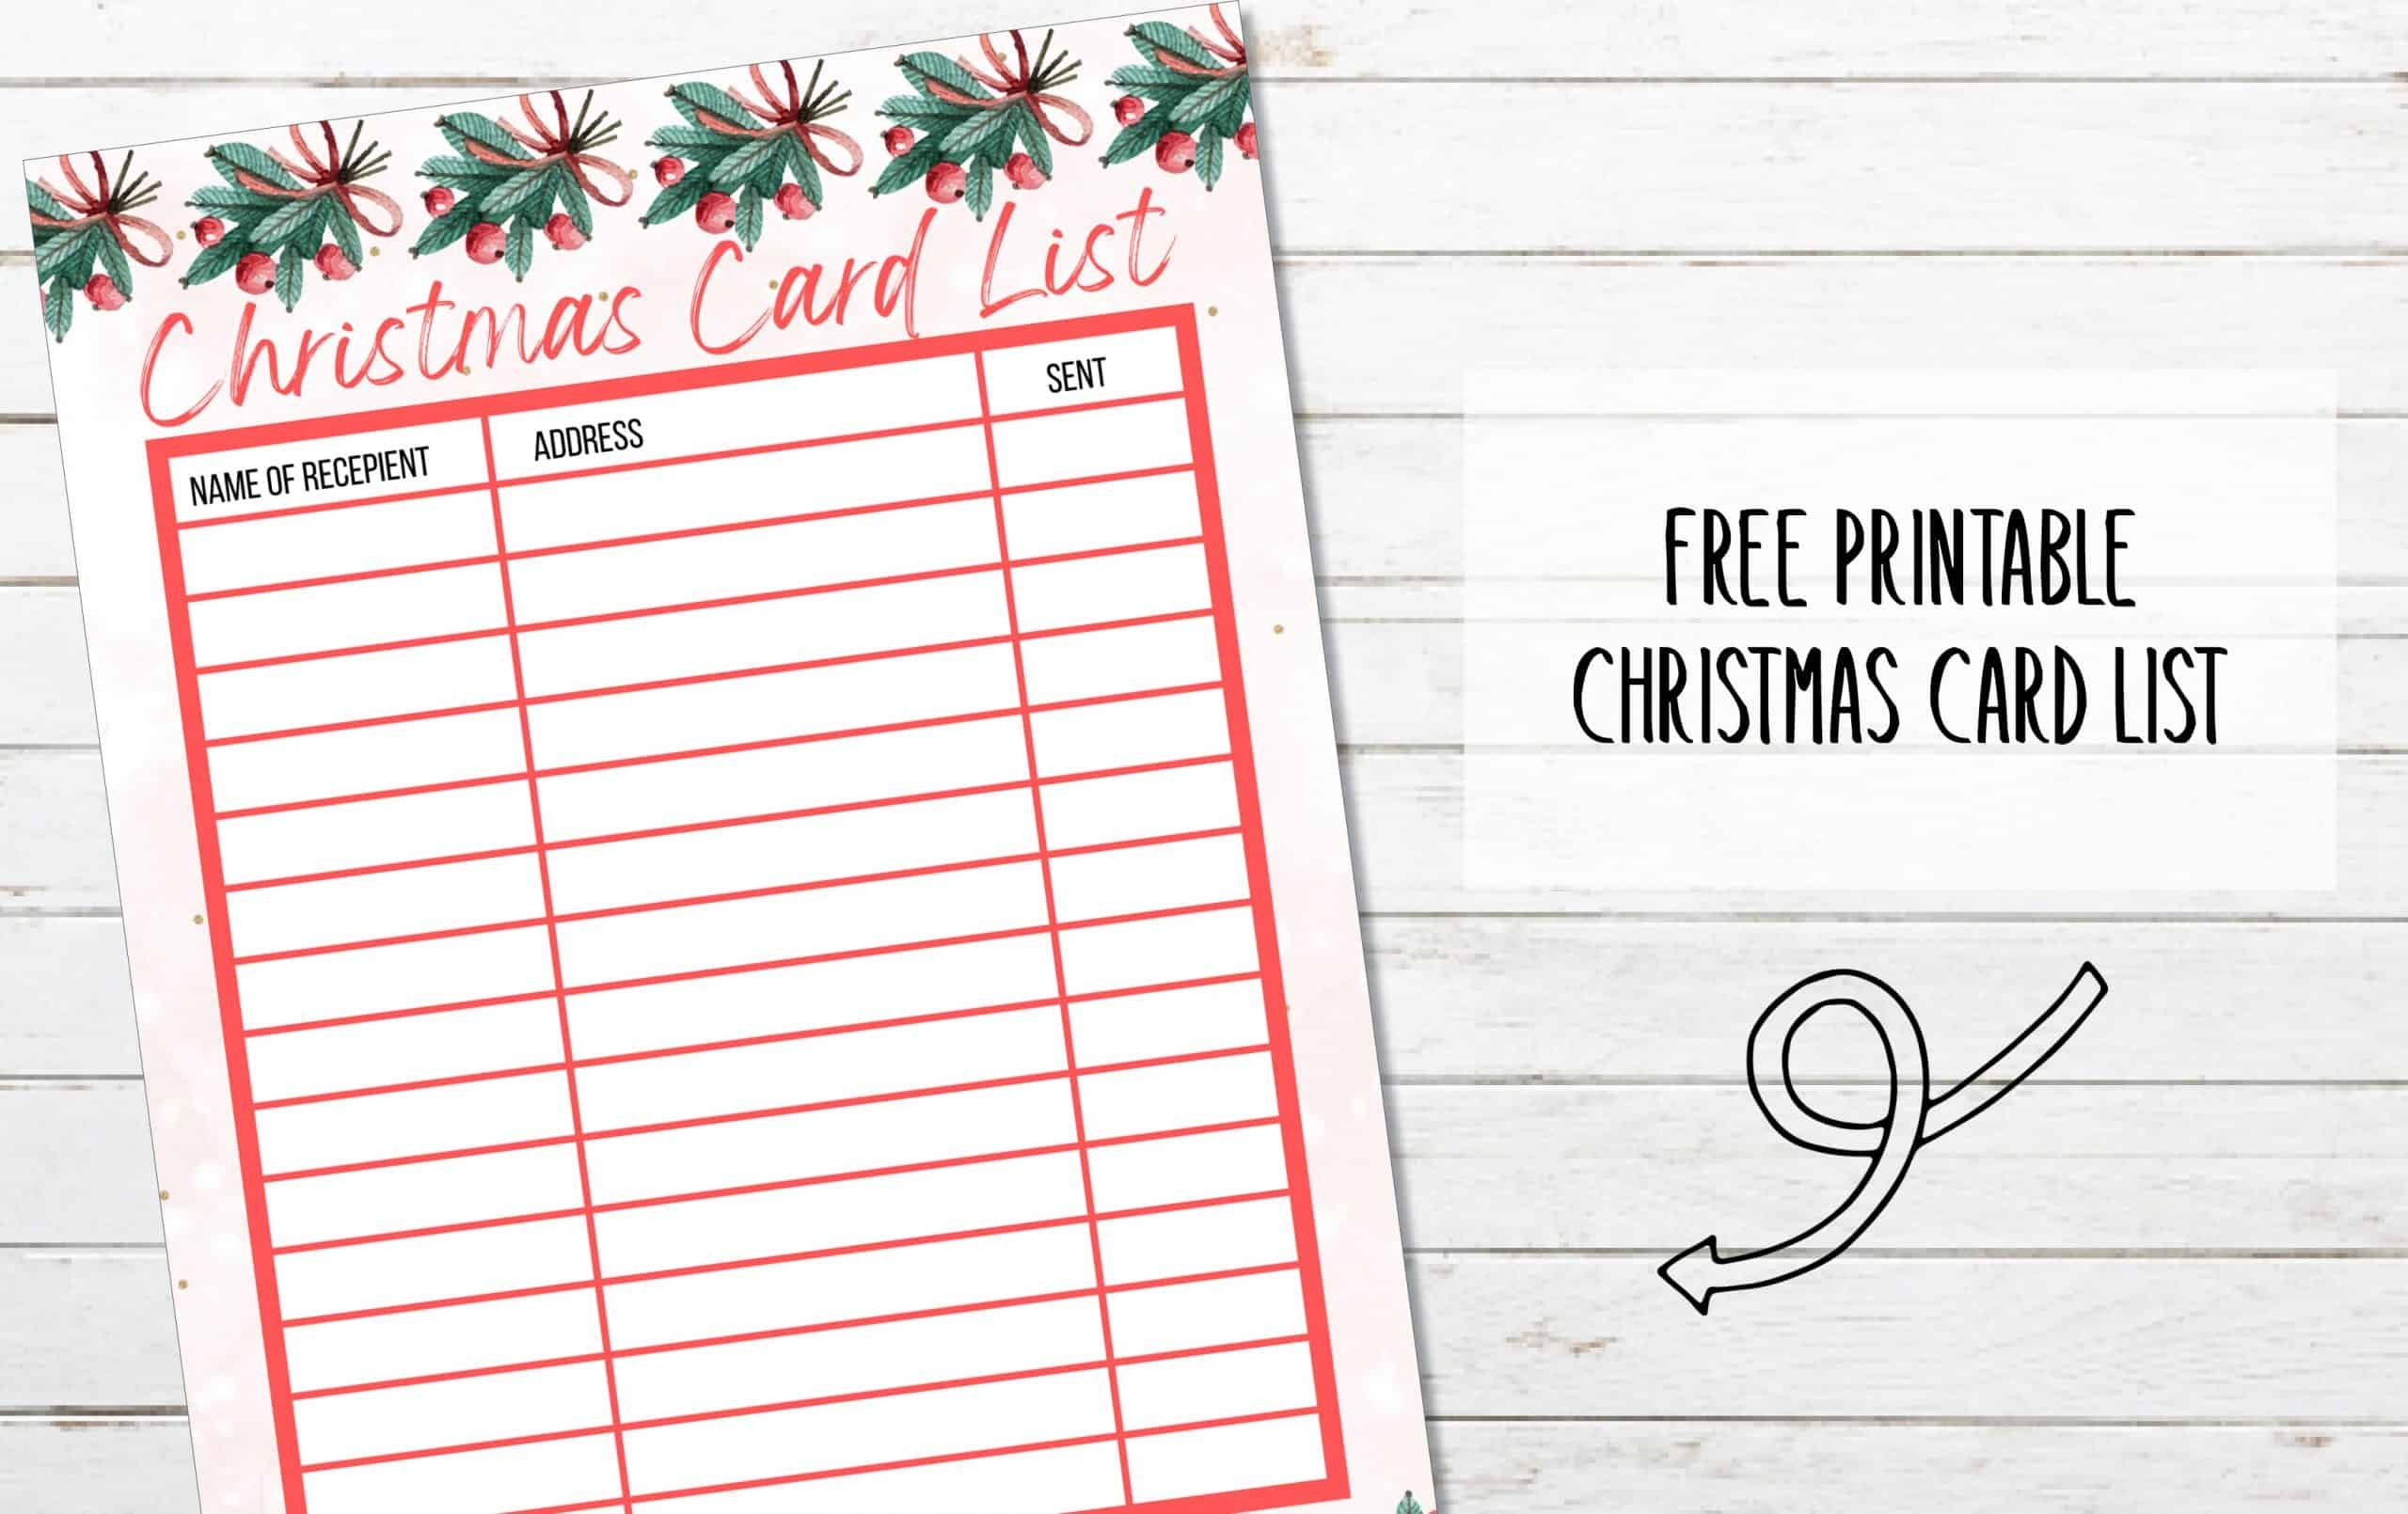 FREE Printable Christmas Card List My Printable Home